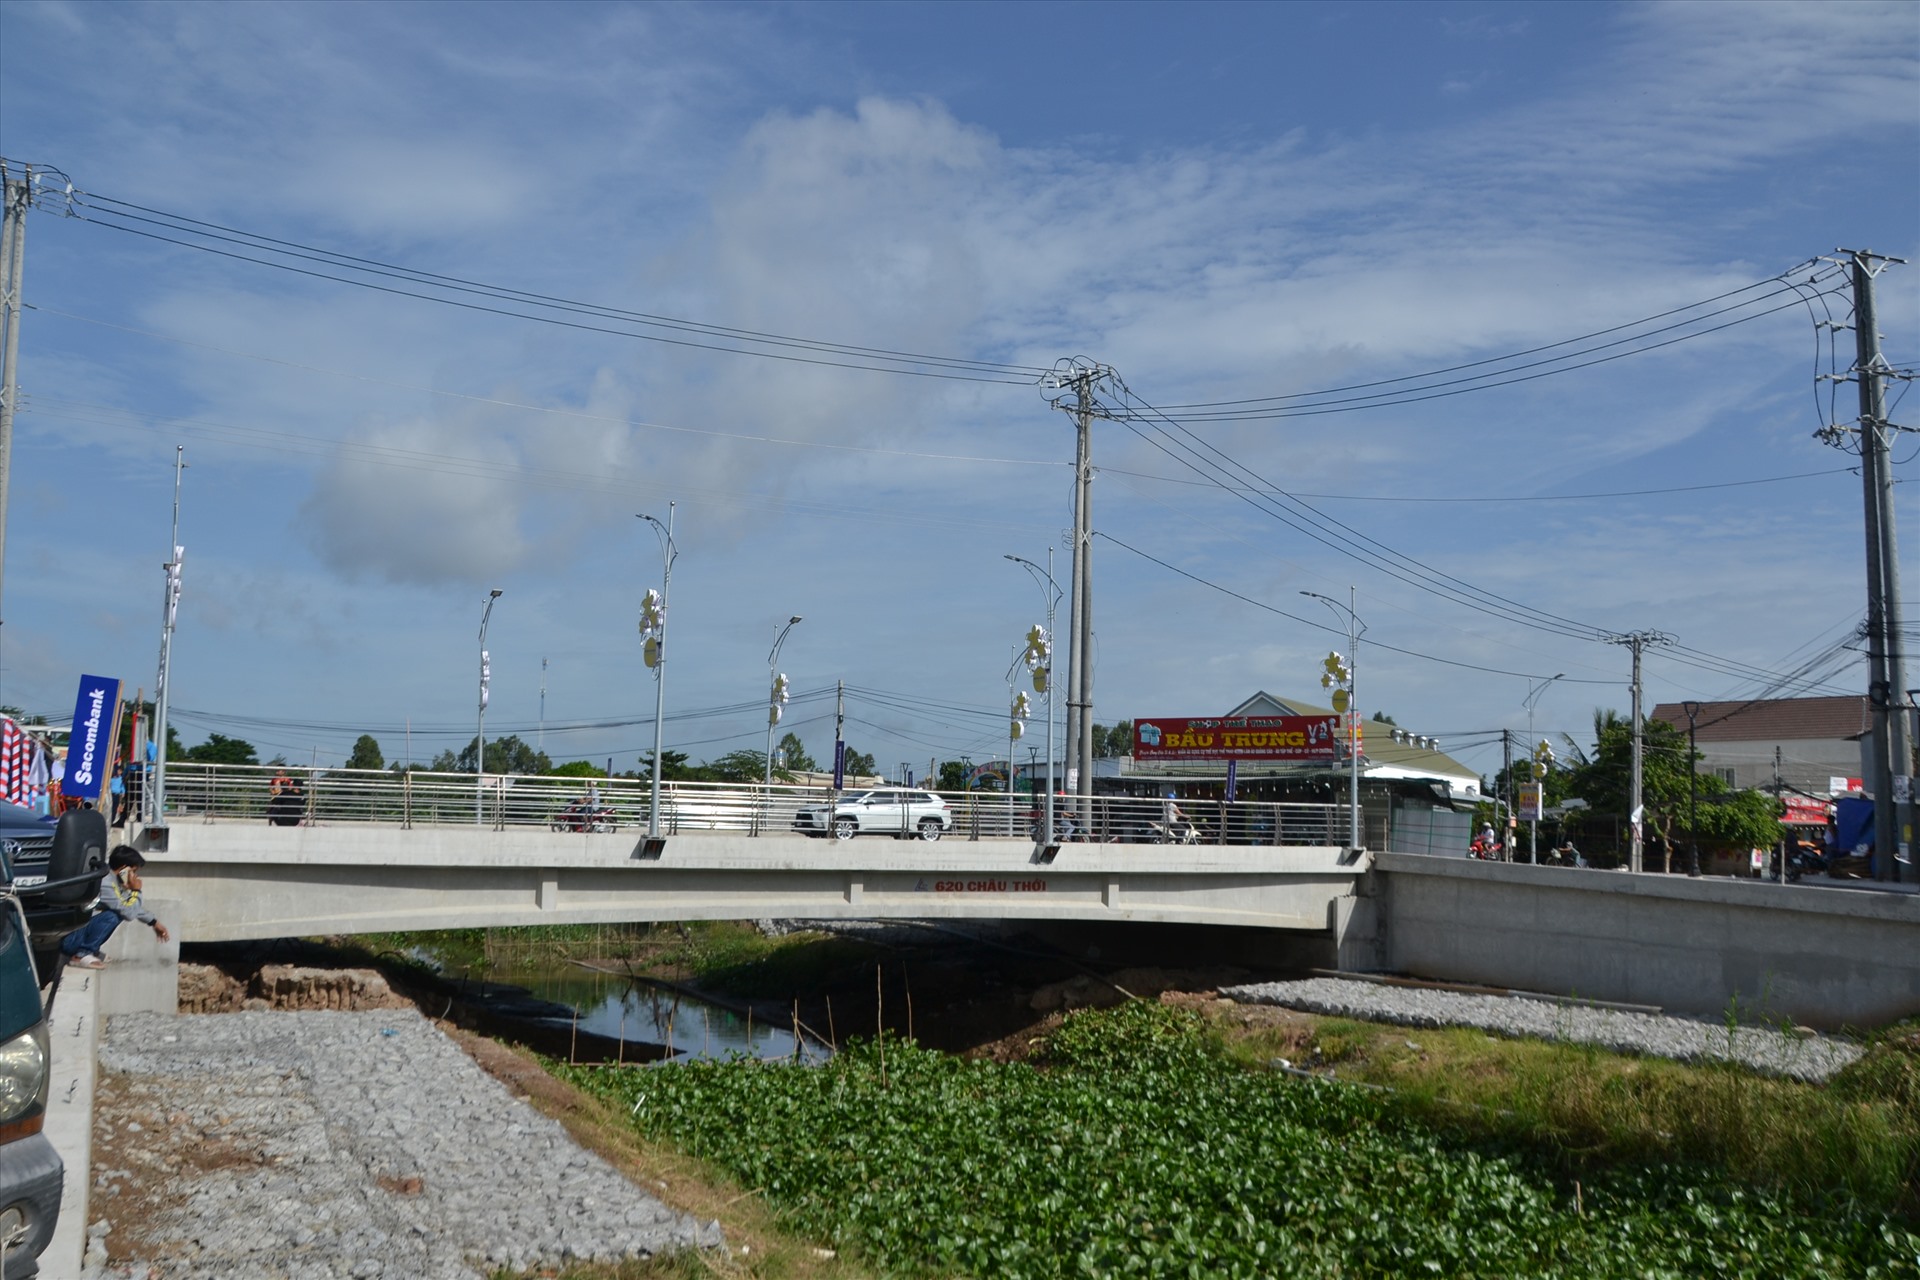 Công trình cầu giao thông nông thôn được gắn biển công trình chào mừng Đại hội Công đoàn tỉnh An Giang. Ảnh: Lâm Điền